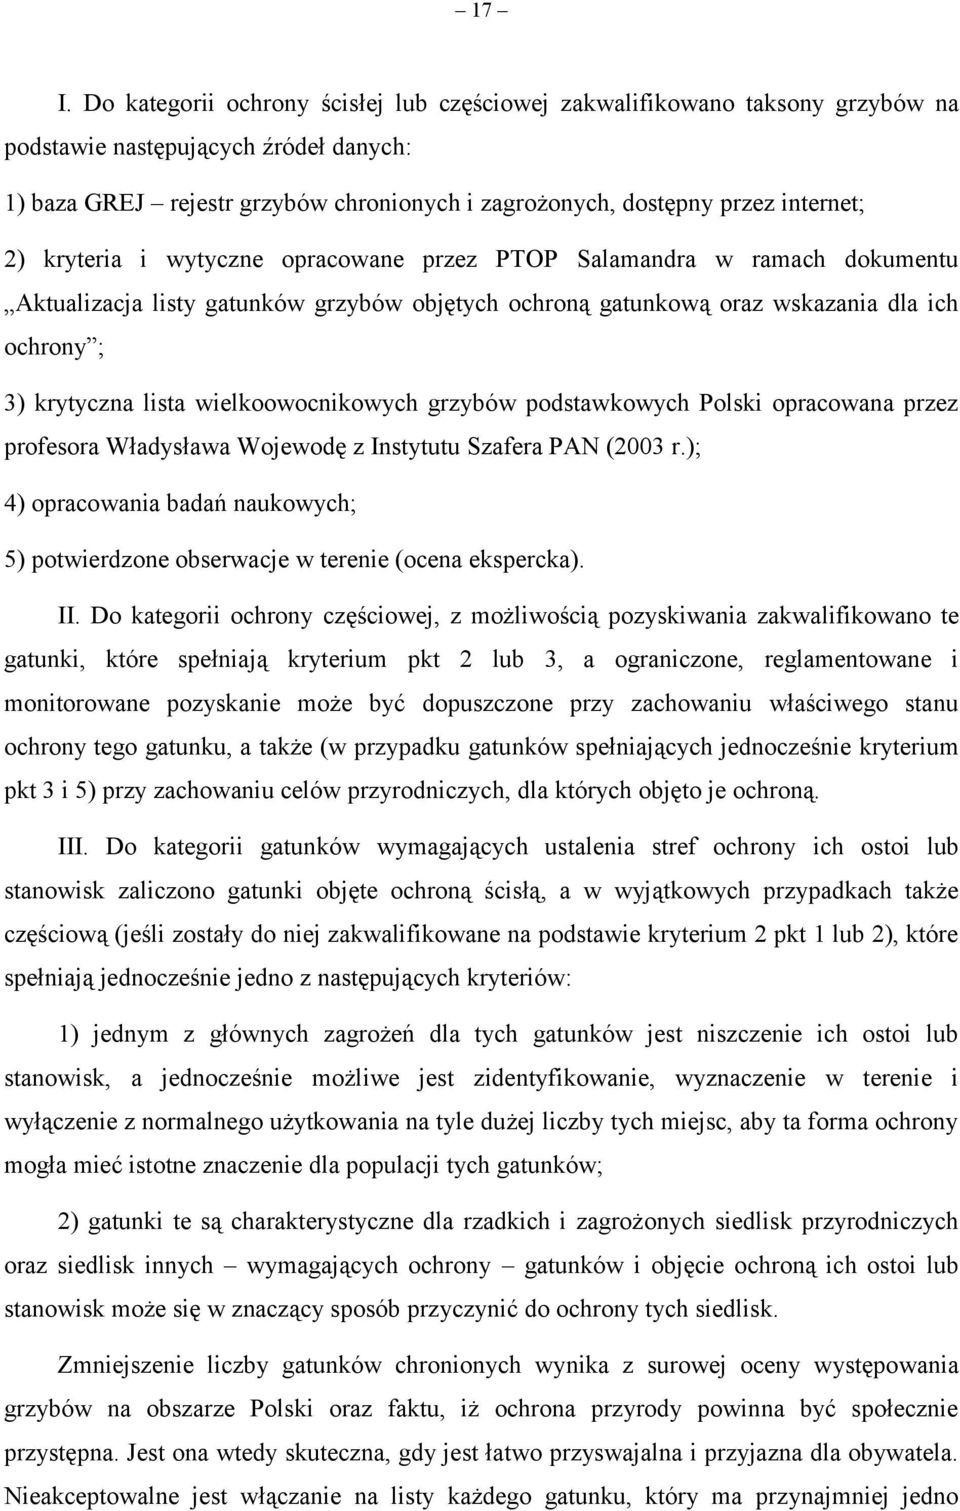 wielkoowocnikowych grzybów podstawkowych Polski opracowana przez profesora Władysława Wojewodę z Instytutu Szafera PAN (2003 r.